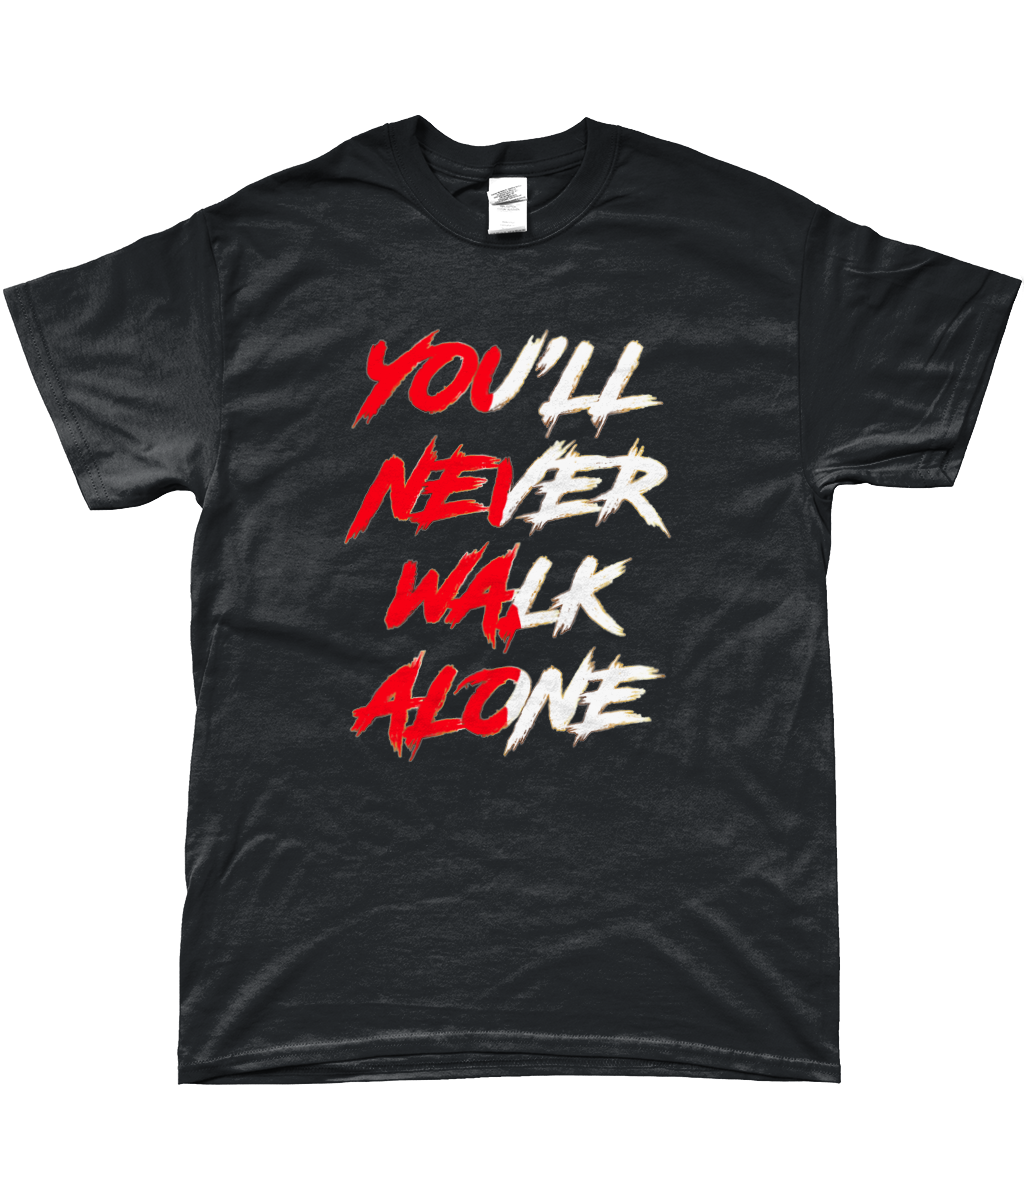 Feyenoord - YNWA T-Shirt